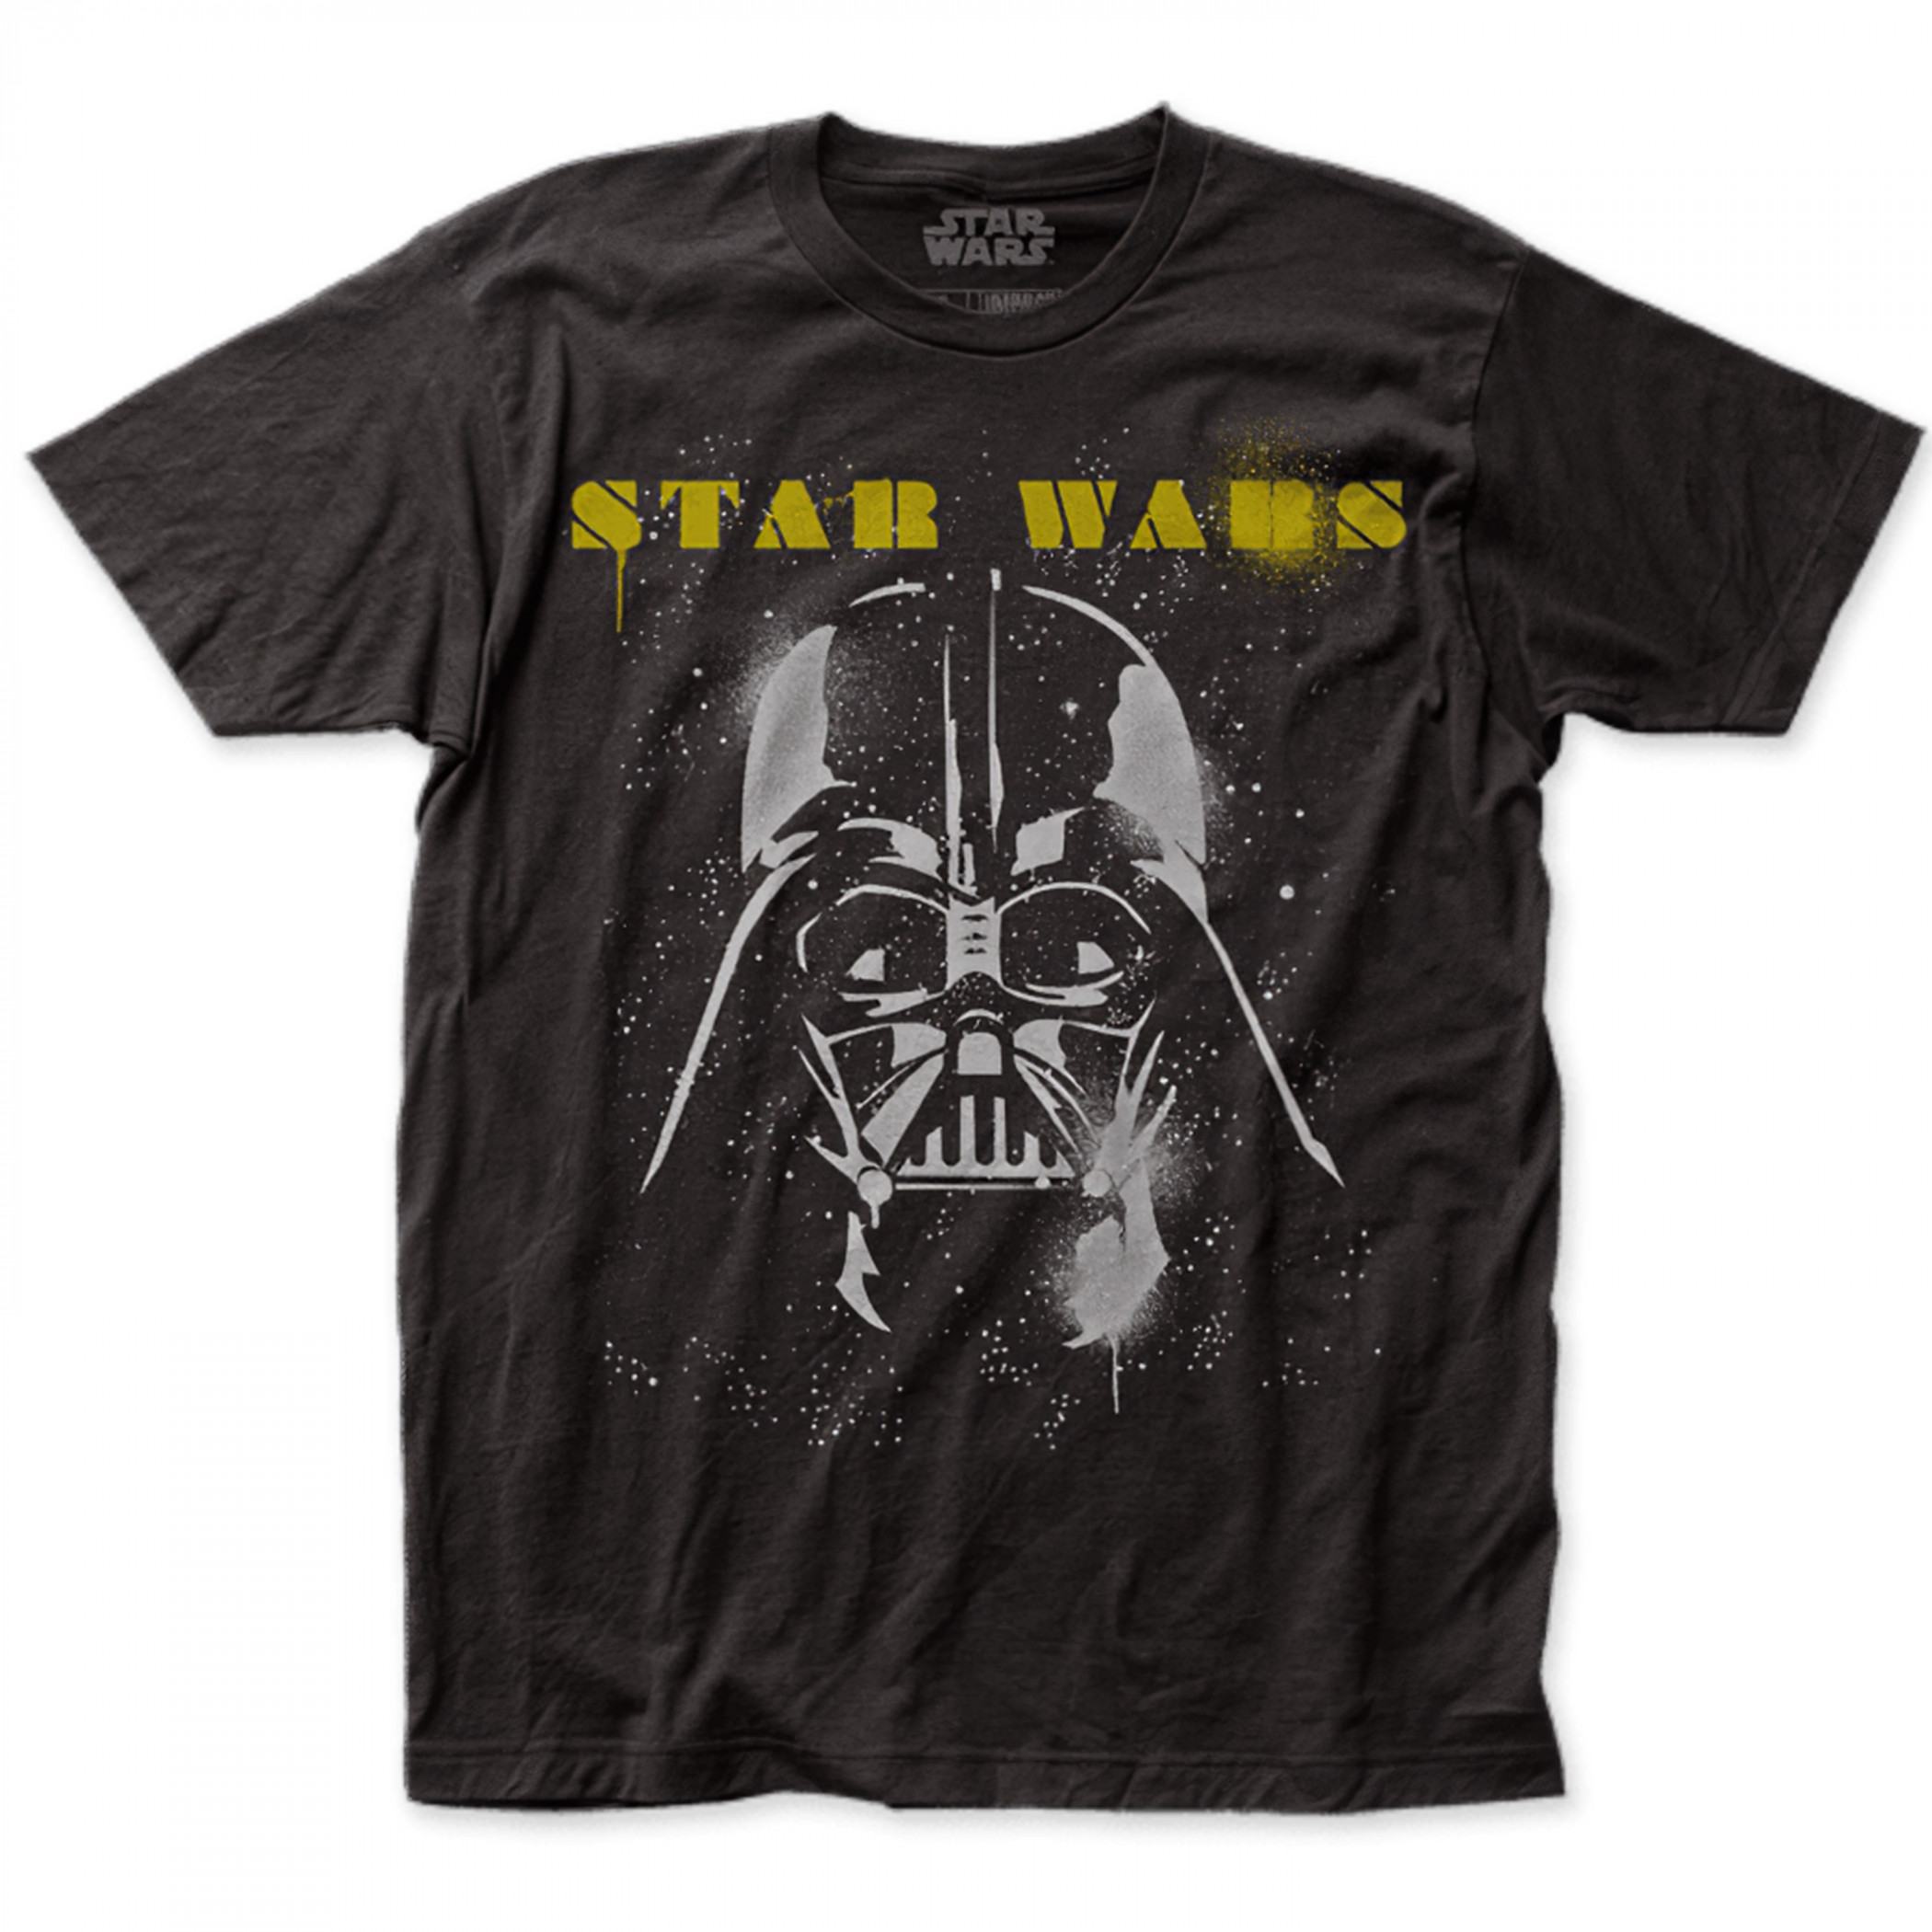 Star Wars Darth Vader Spray Paint T-Shirt